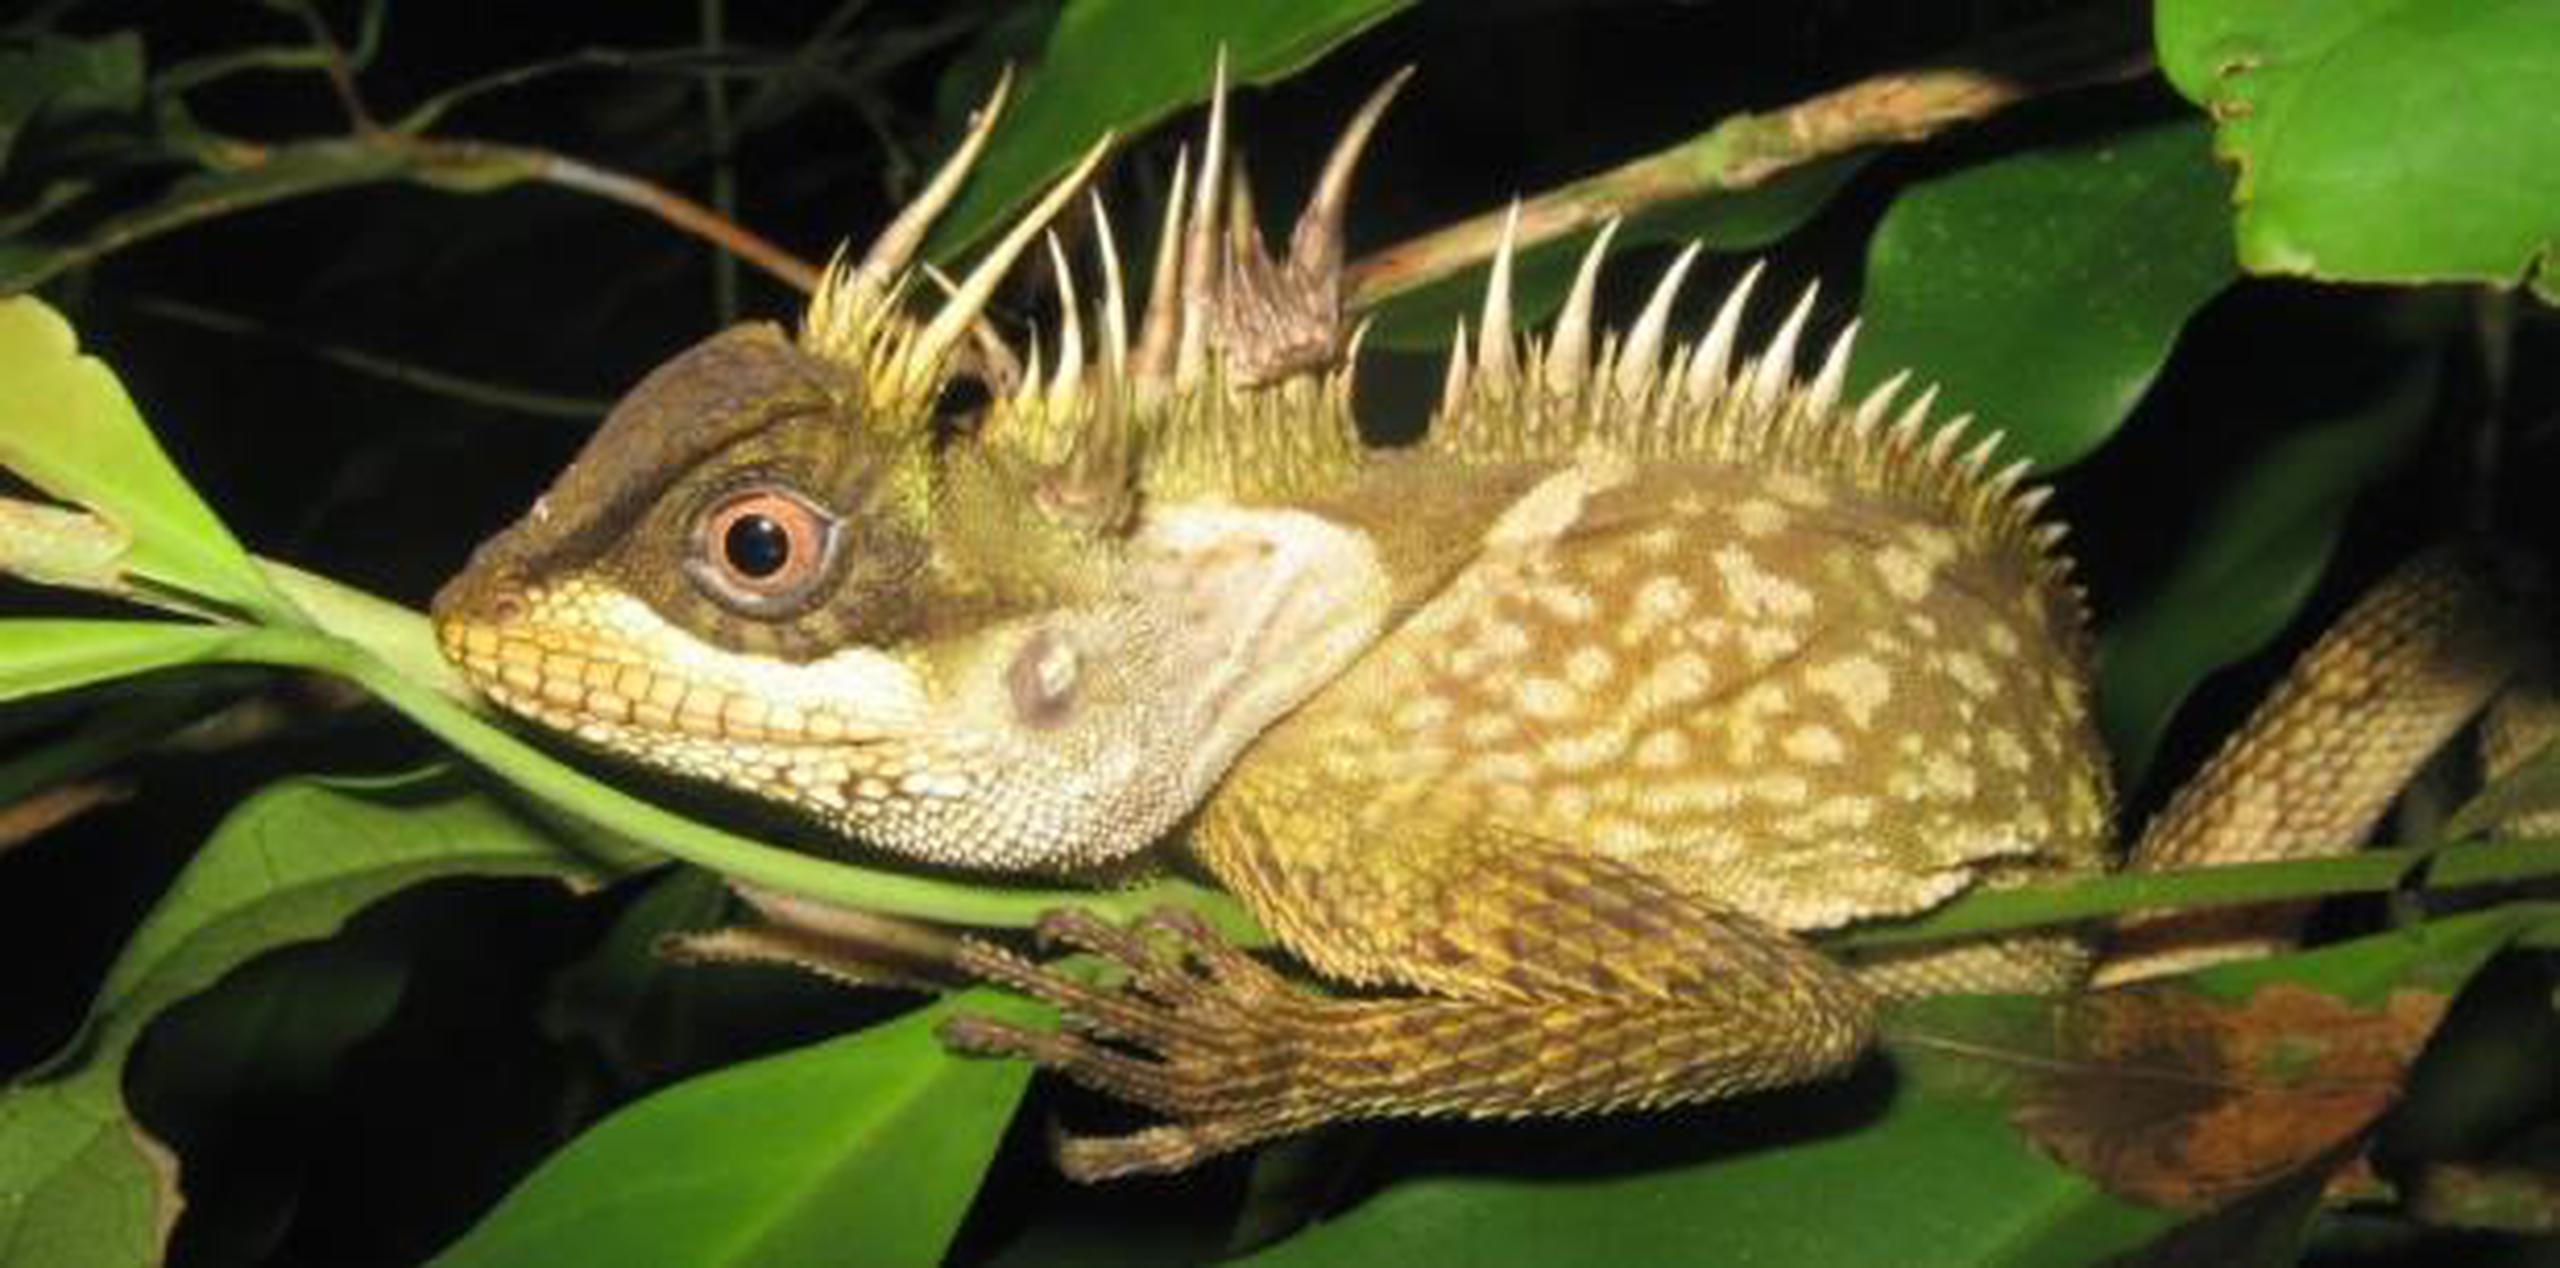 Las nuevas especies incluyen tres mamíferos, 23 peces, 14 anfibios, 26 reptiles y 91 plantas halladas entre Camboya, Laos, Birmania, Tailandia y Vietnam. (Archivo)